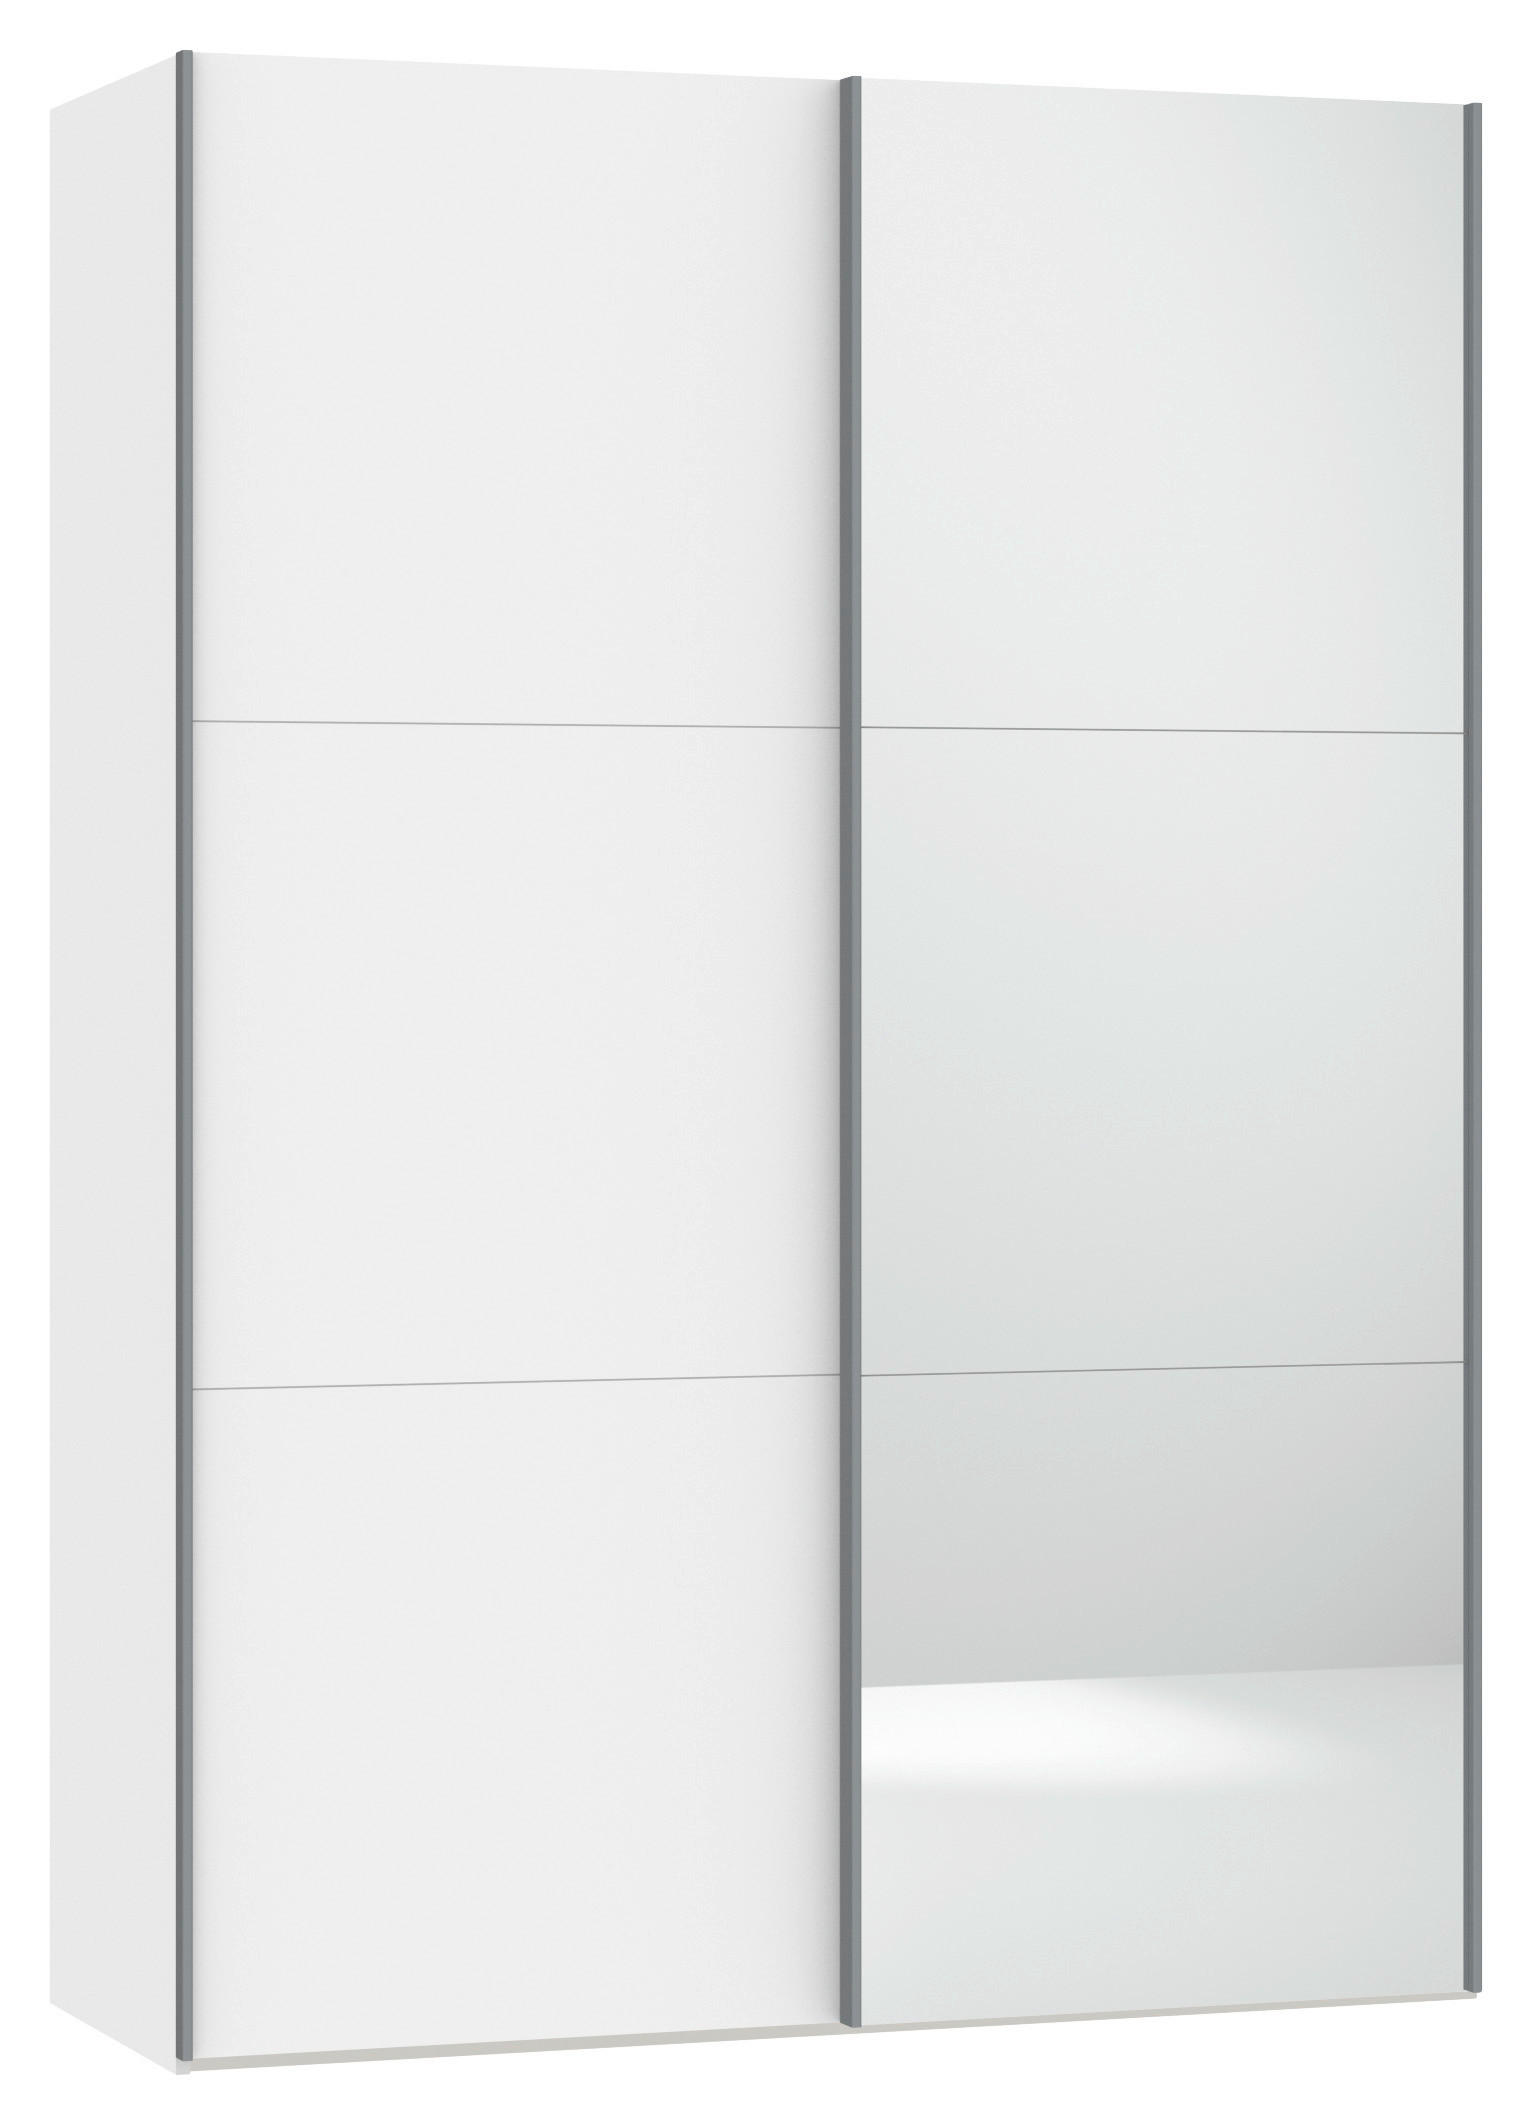 SCHWEBETÜRENSCHRANK 2-türig Weiß  - Silberfarben/Weiß, Design, Glas/Metall (152/220/46cm) - Jutzler